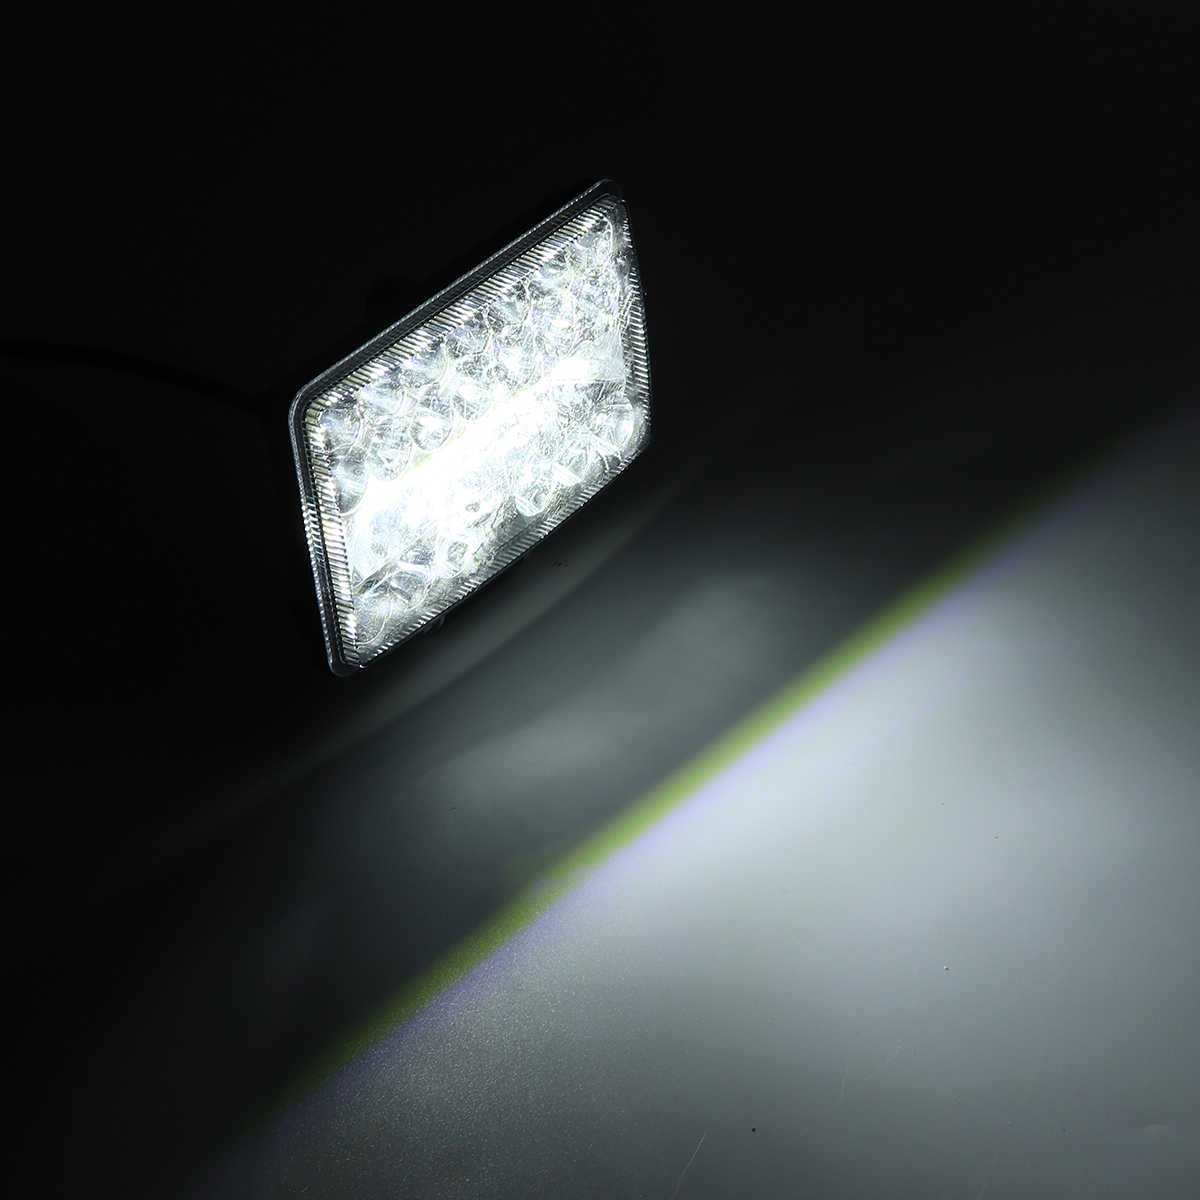 4Inch 108W LED Work Light Spot Flood Combo Beam Driving Fog Lamp 6000K White for 9-30V SUV Truck